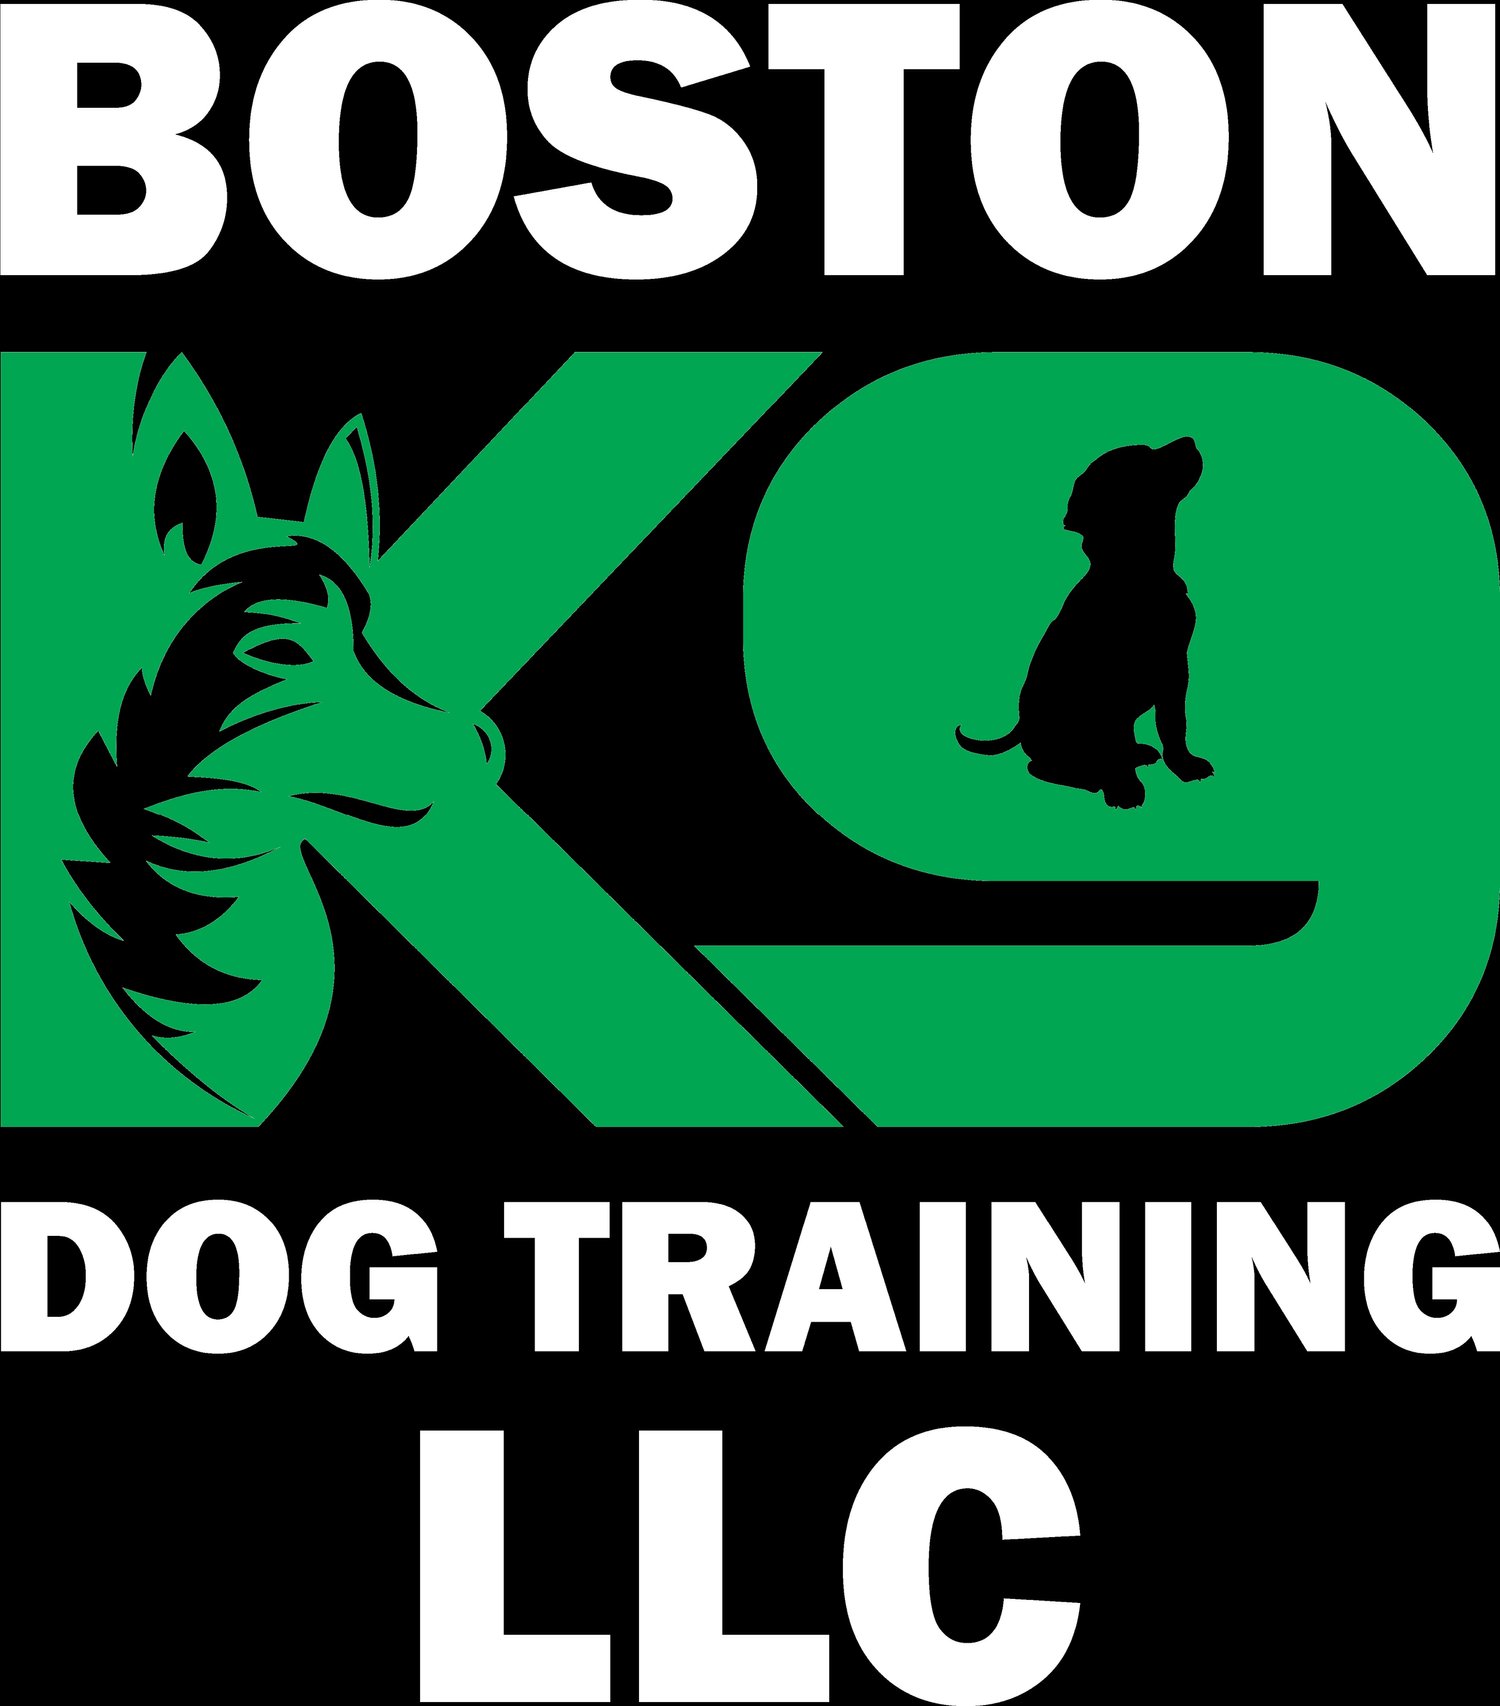 BOSTON K9 DOG TRAINING